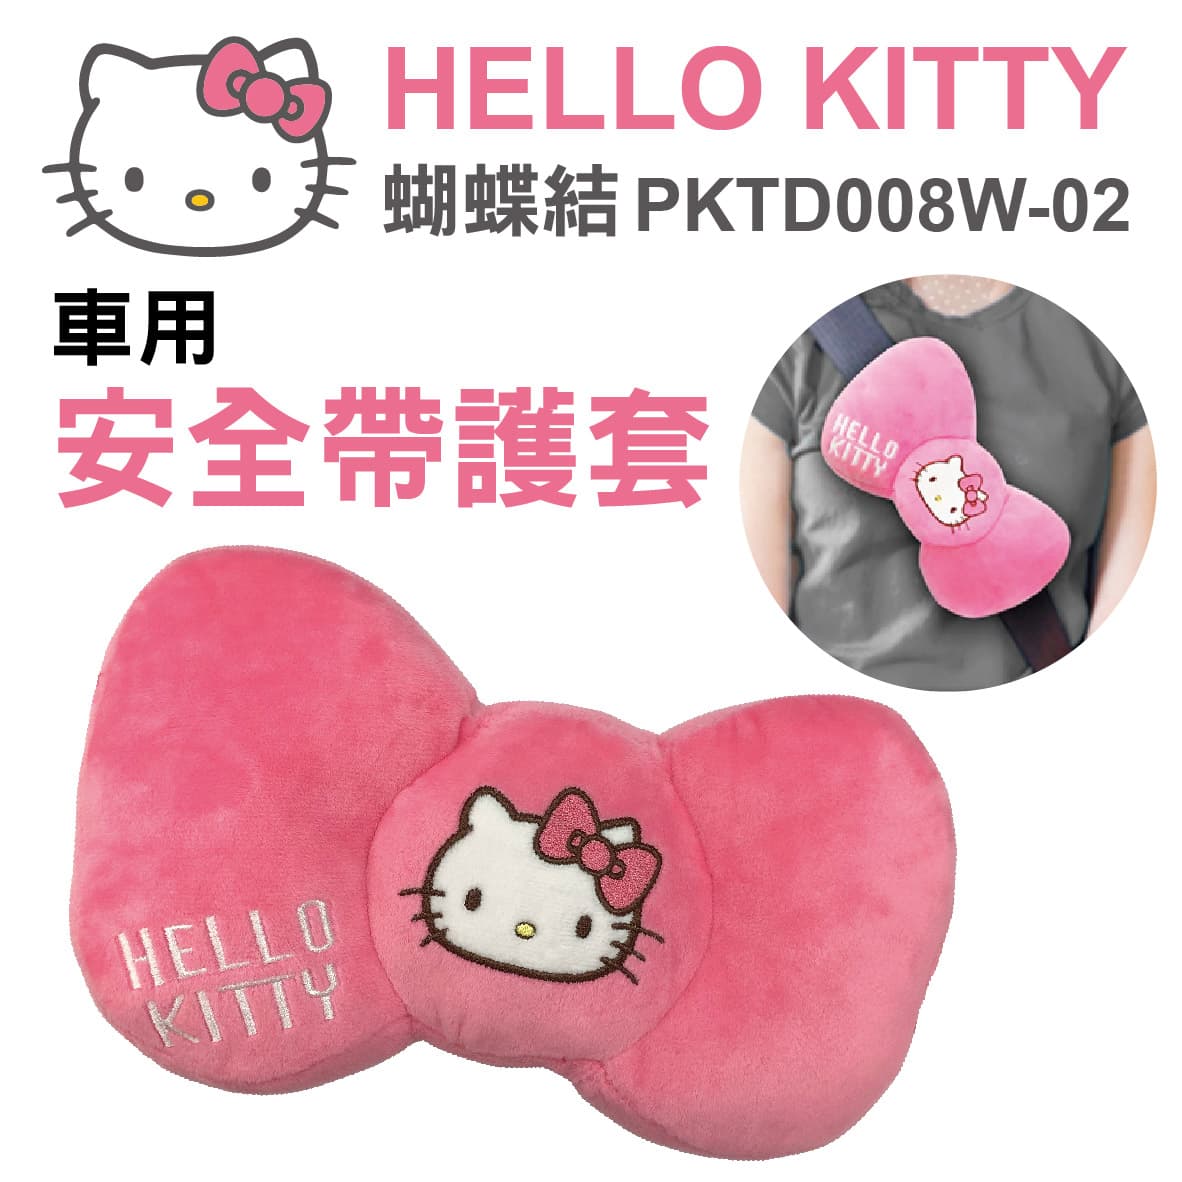 真便宜 HELLO KITTY PKTD008W-02 蝴蝶結-安全帶護枕